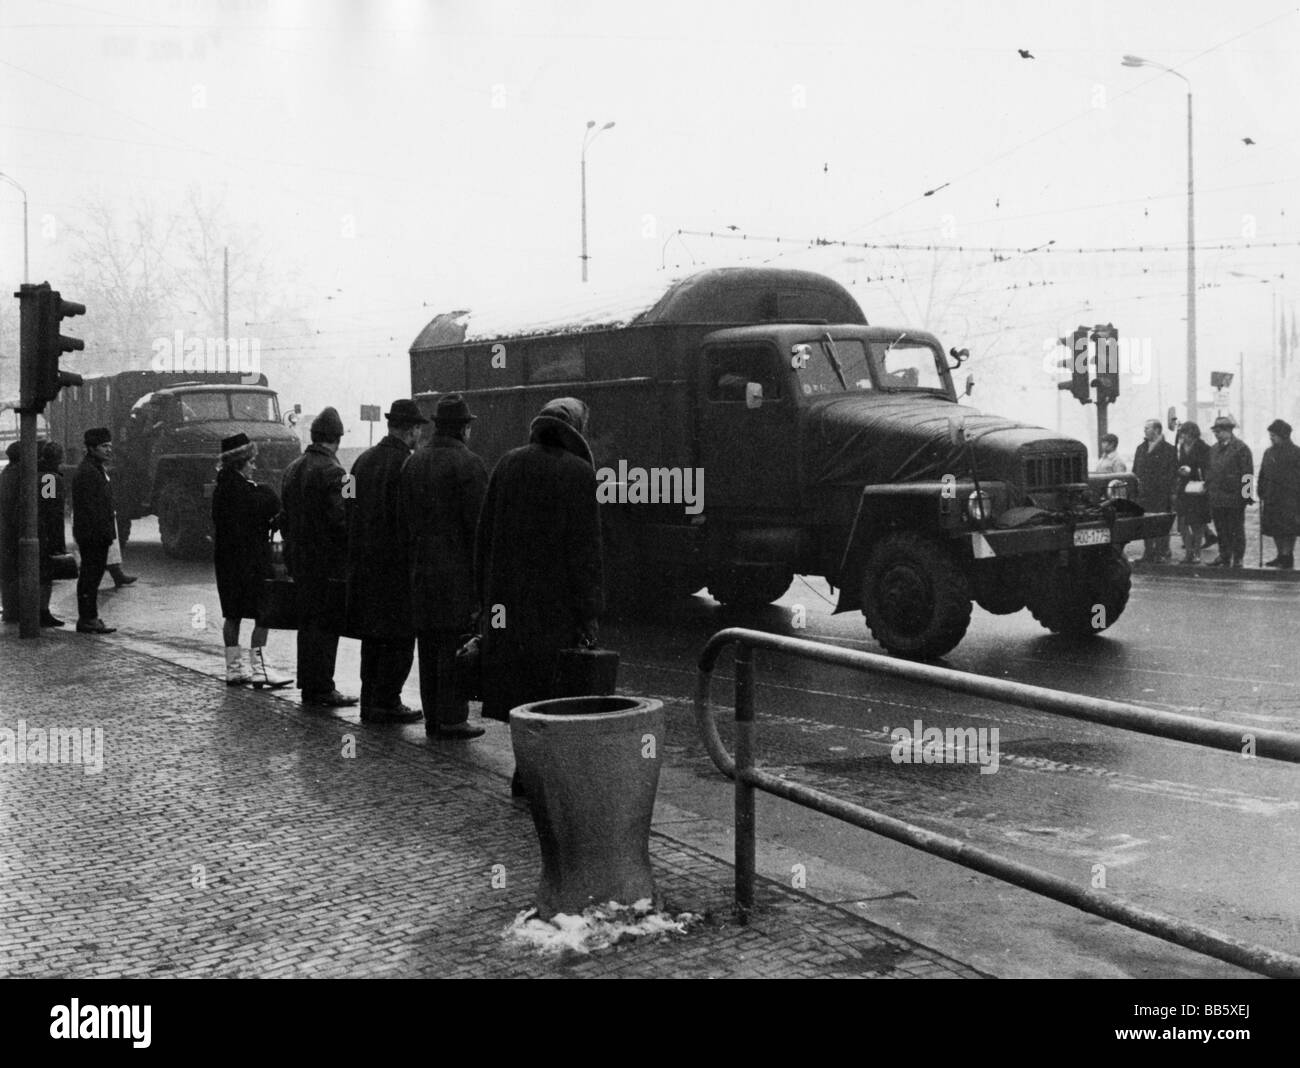 Transport lkw deutschland Schwarzweiß-Stockfotos und -bilder - Alamy